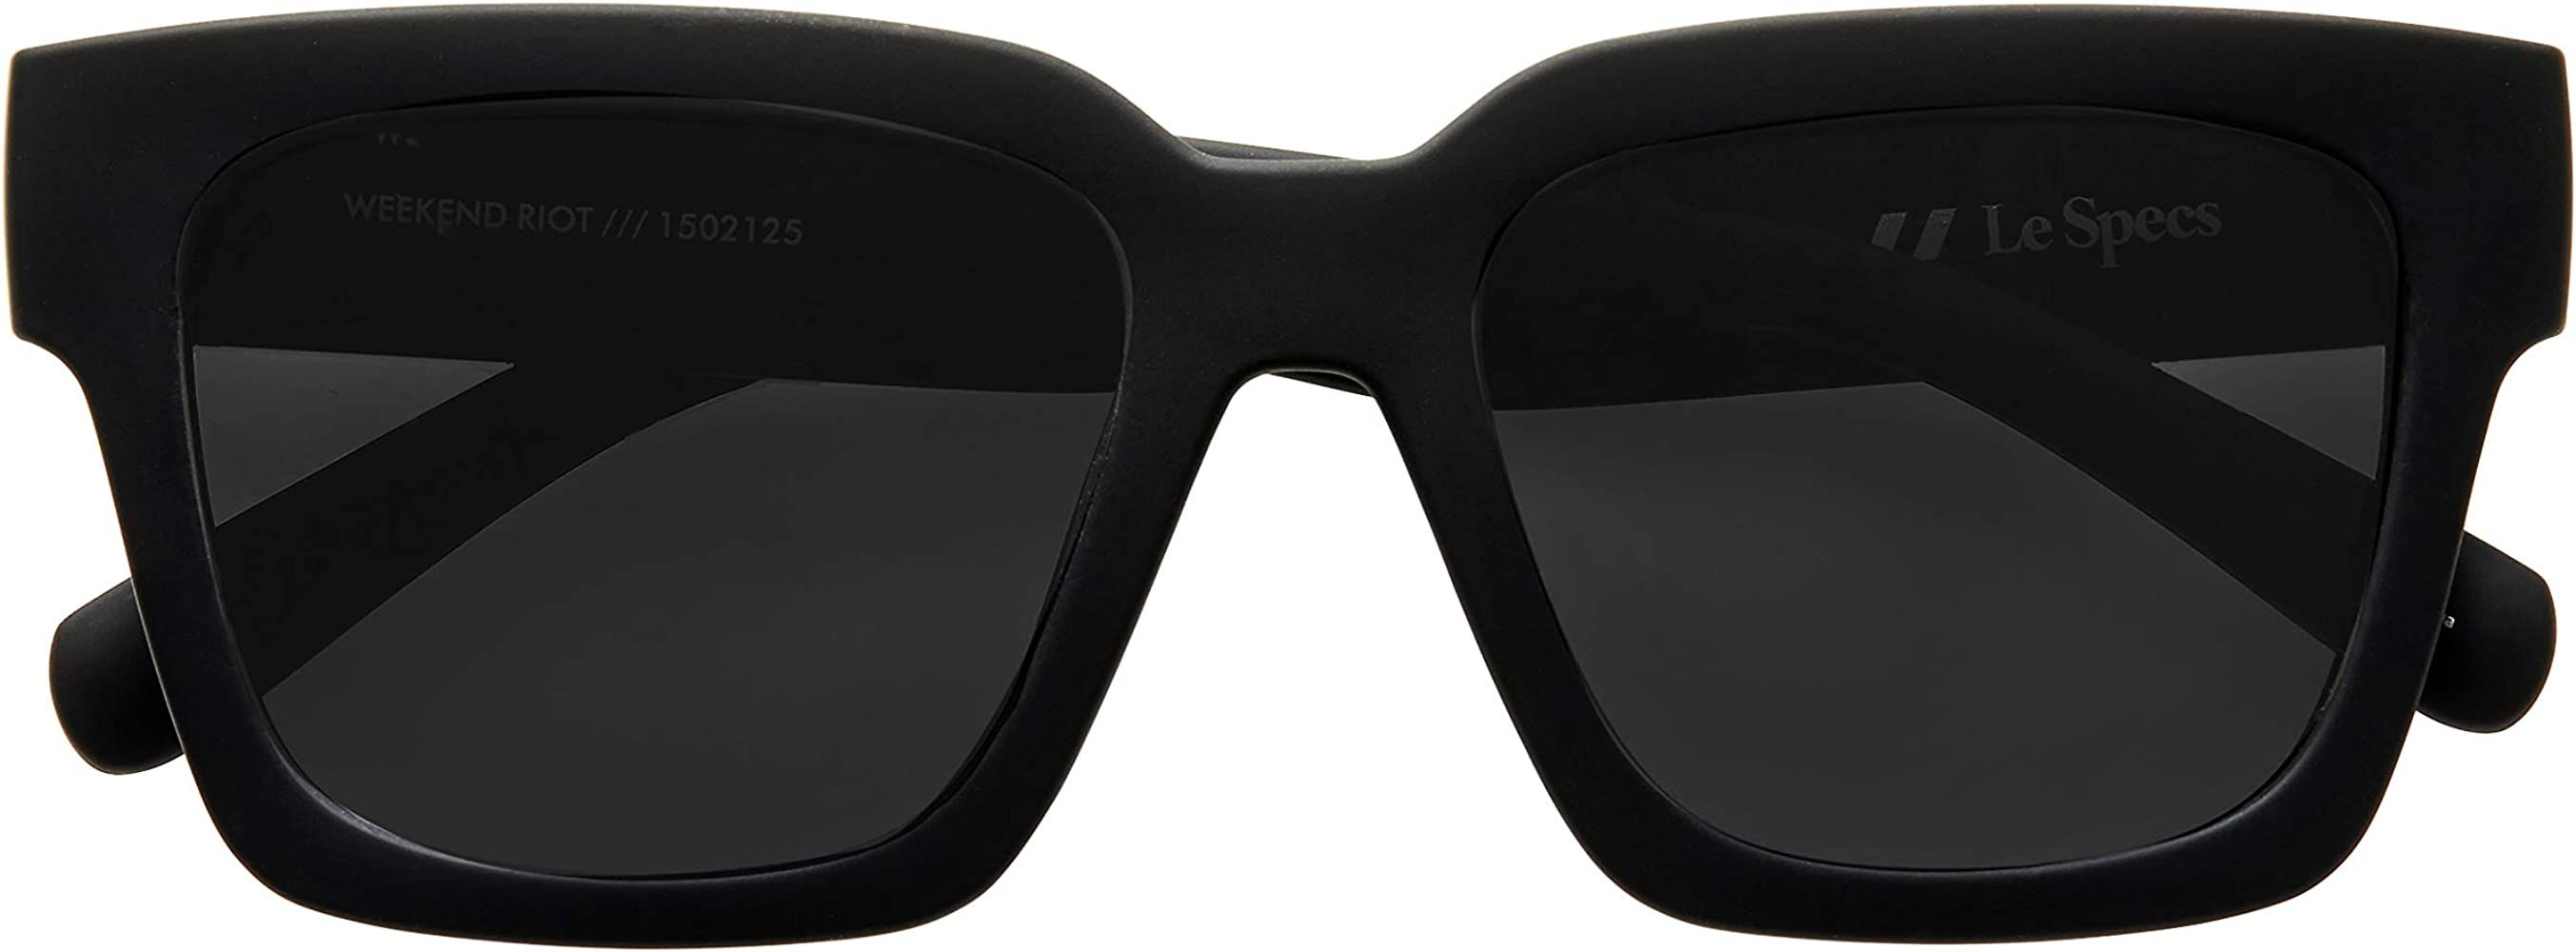 Le Specs Weekend Riot Sunglasses | Amazon (US)